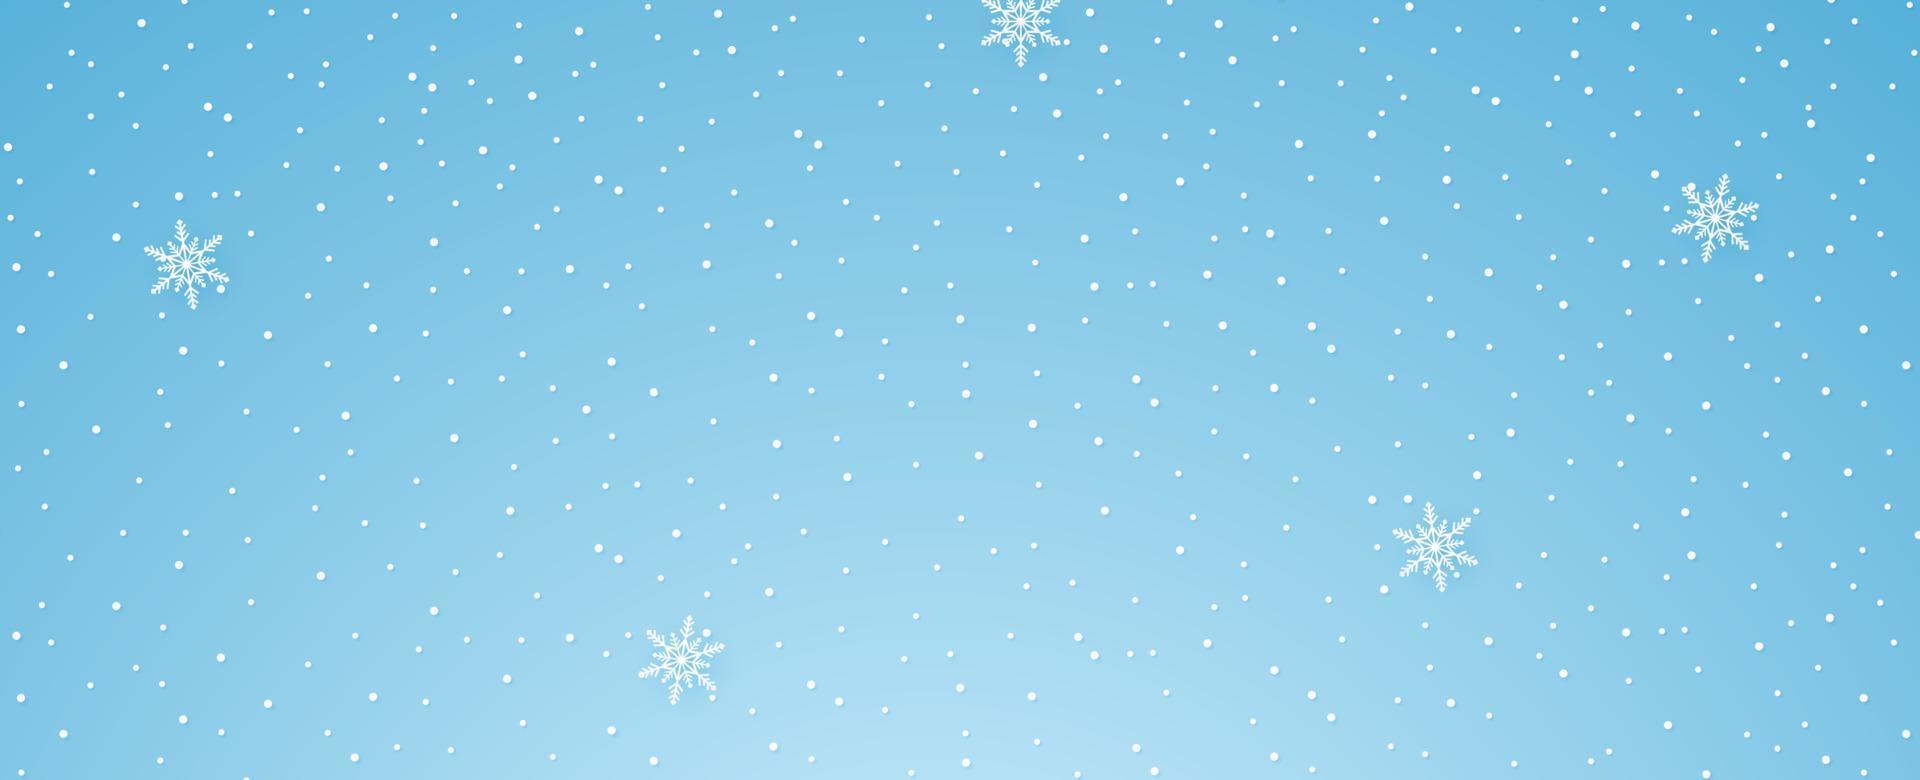 Schnee fällt mit Schneeflocke, Wintersaison, Kopierraum, Papierkunststil vektor